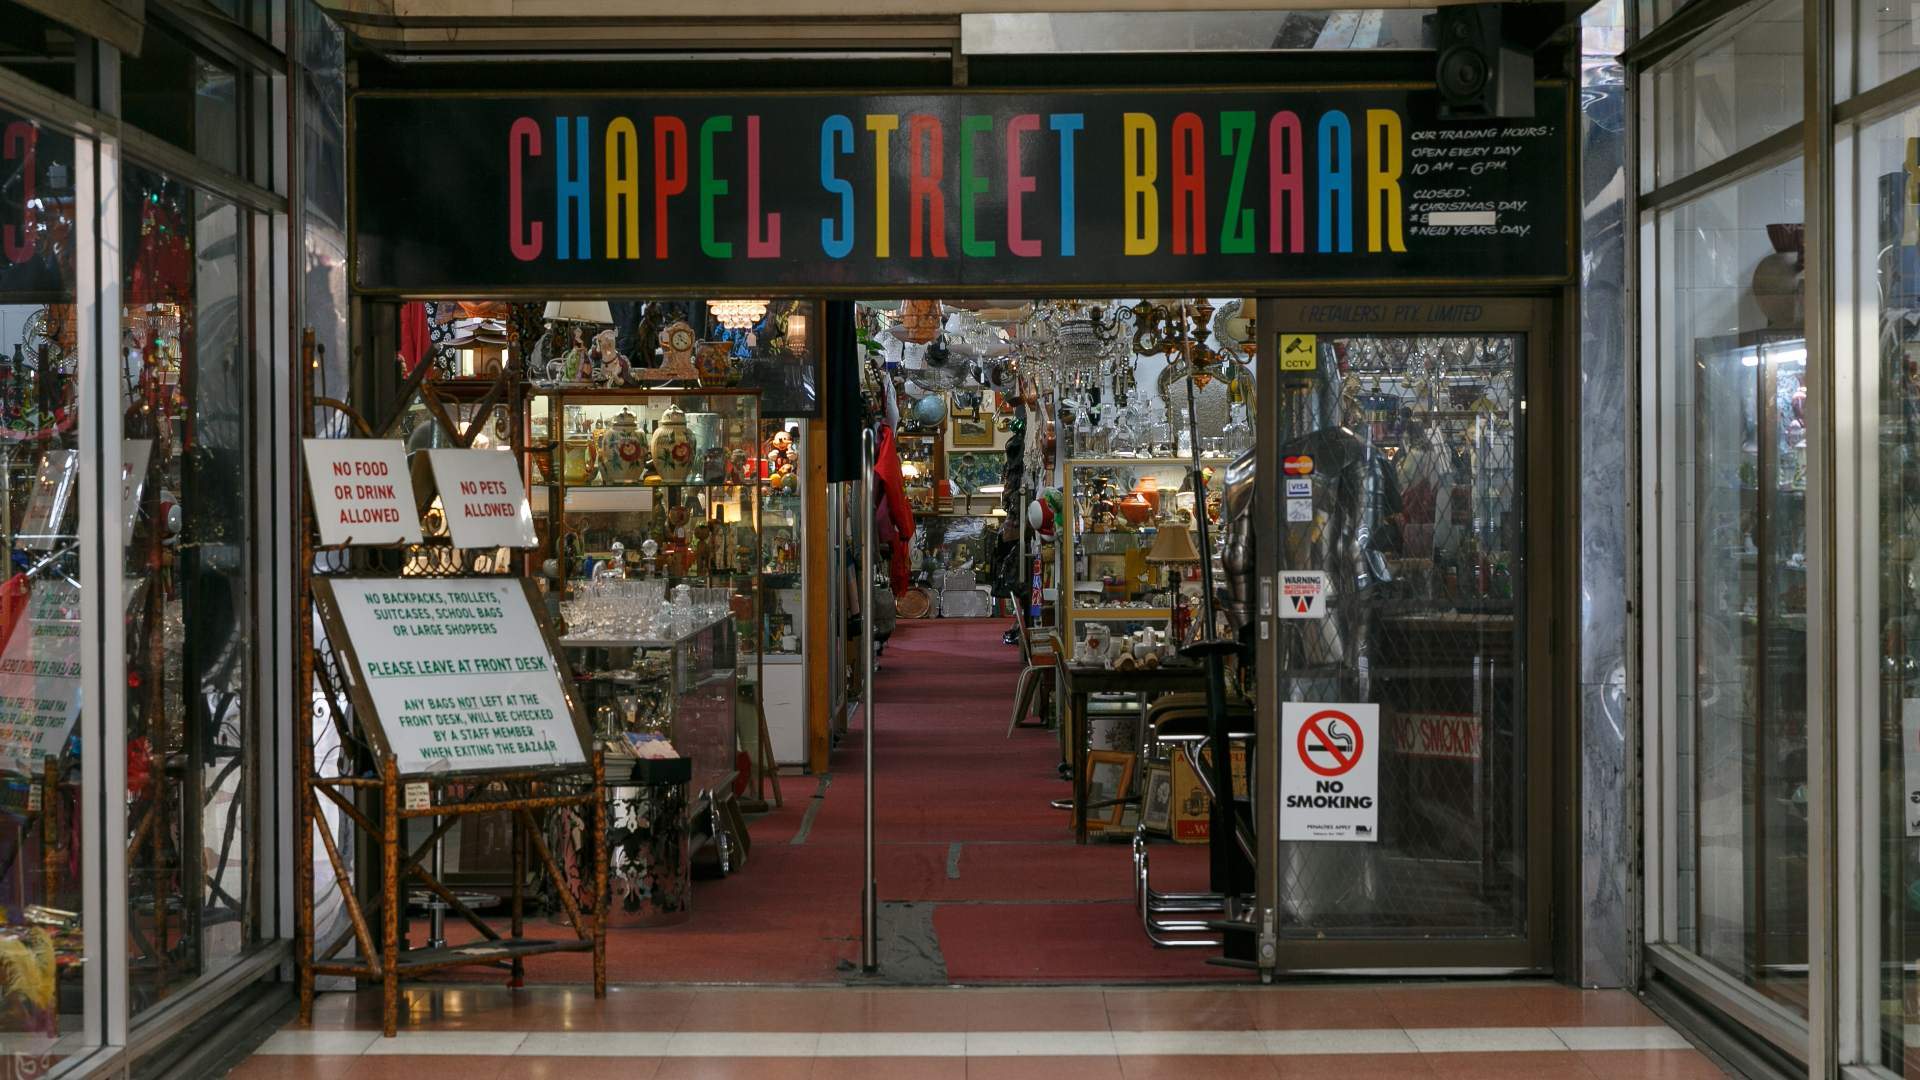 Chapel Street Bazaar by Parker Blain.